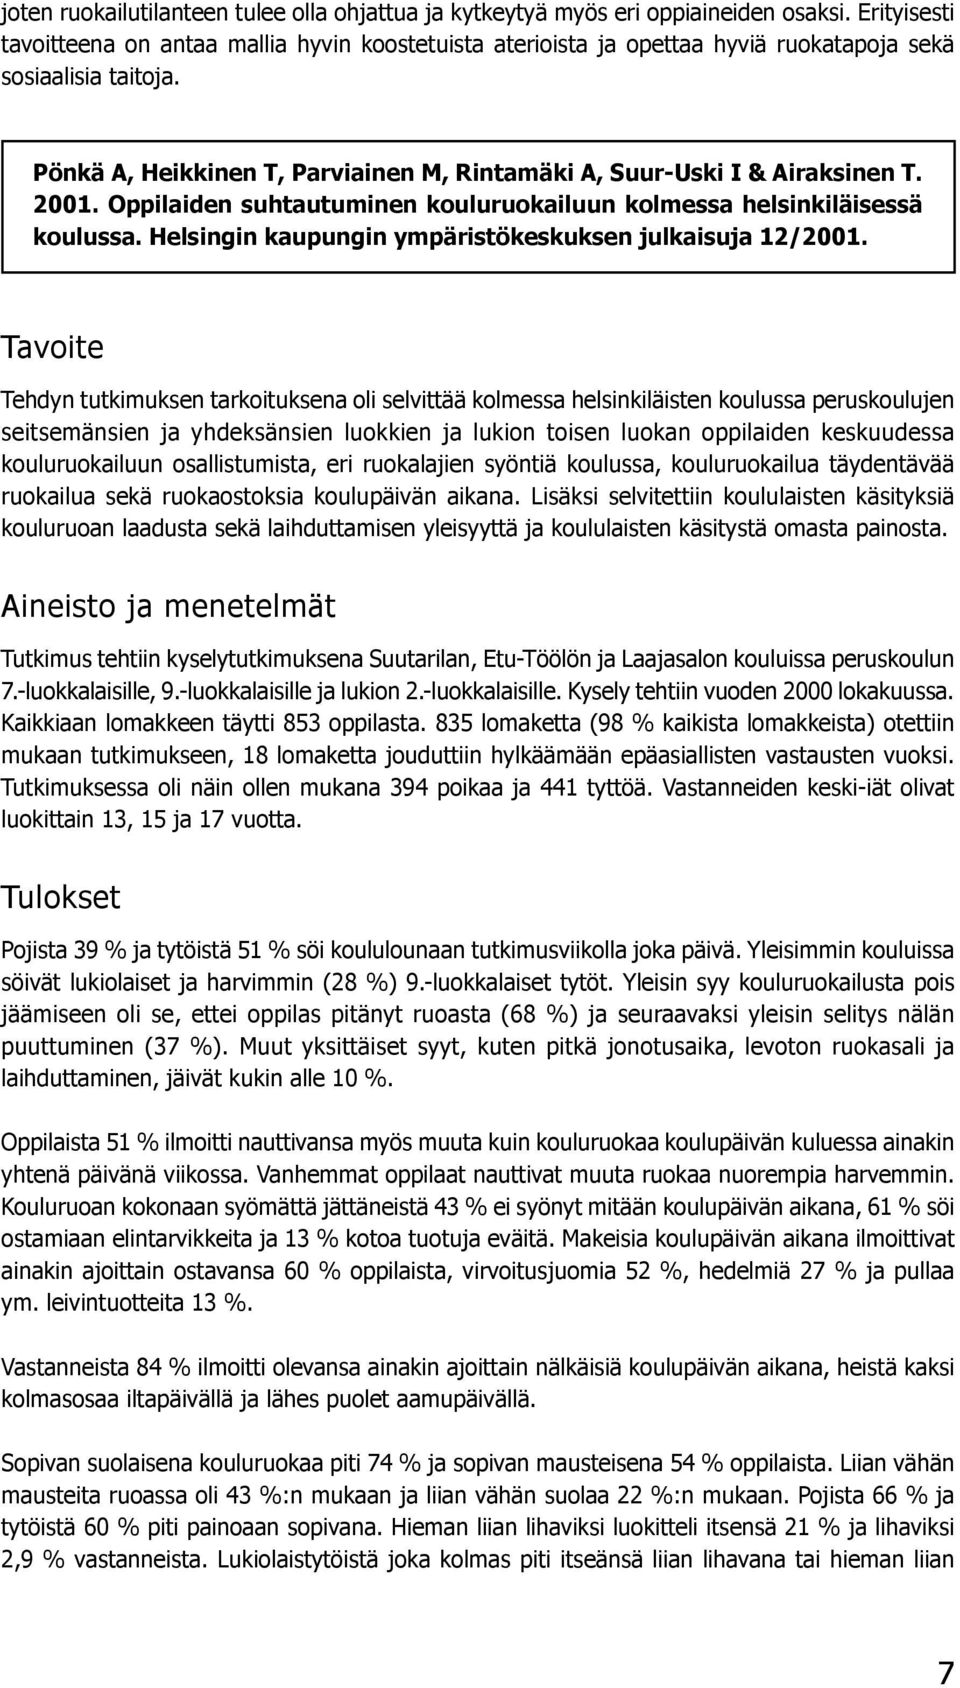 Pönkä A, Heikkinen T, Parviainen M, Rintamäki A, Suur-Uski I & Airaksinen T. 2001. Oppilaiden suhtautuminen kouluruokailuun kolmessa helsinkiläisessä koulussa.